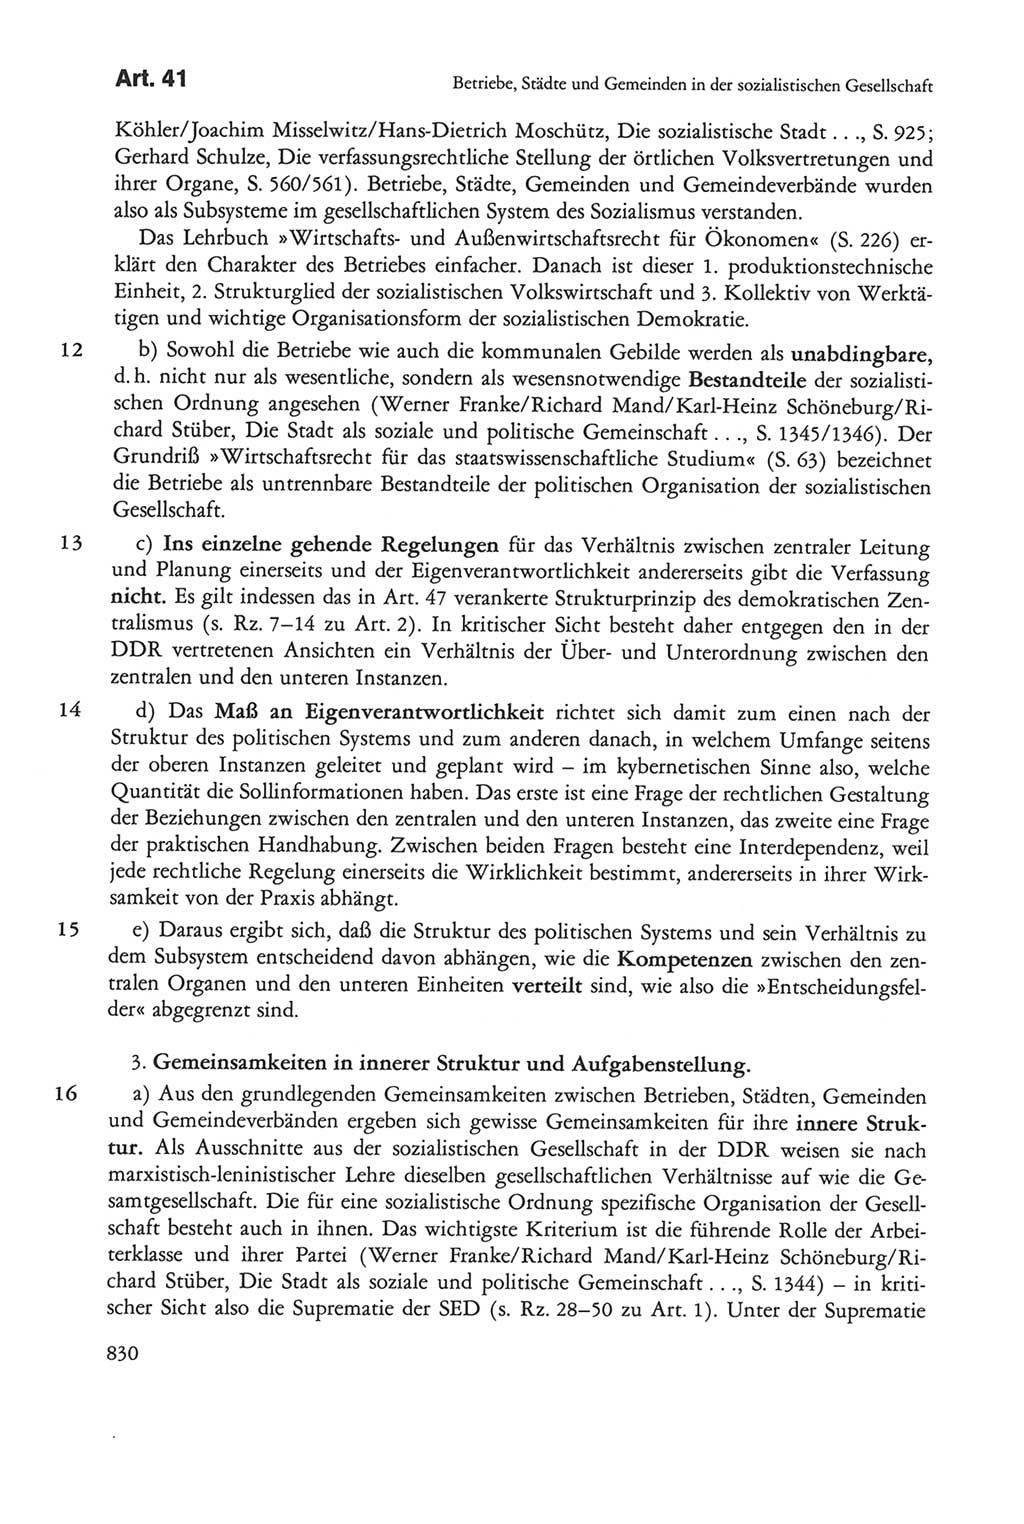 Die sozialistische Verfassung der Deutschen Demokratischen Republik (DDR), Kommentar 1982, Seite 830 (Soz. Verf. DDR Komm. 1982, S. 830)